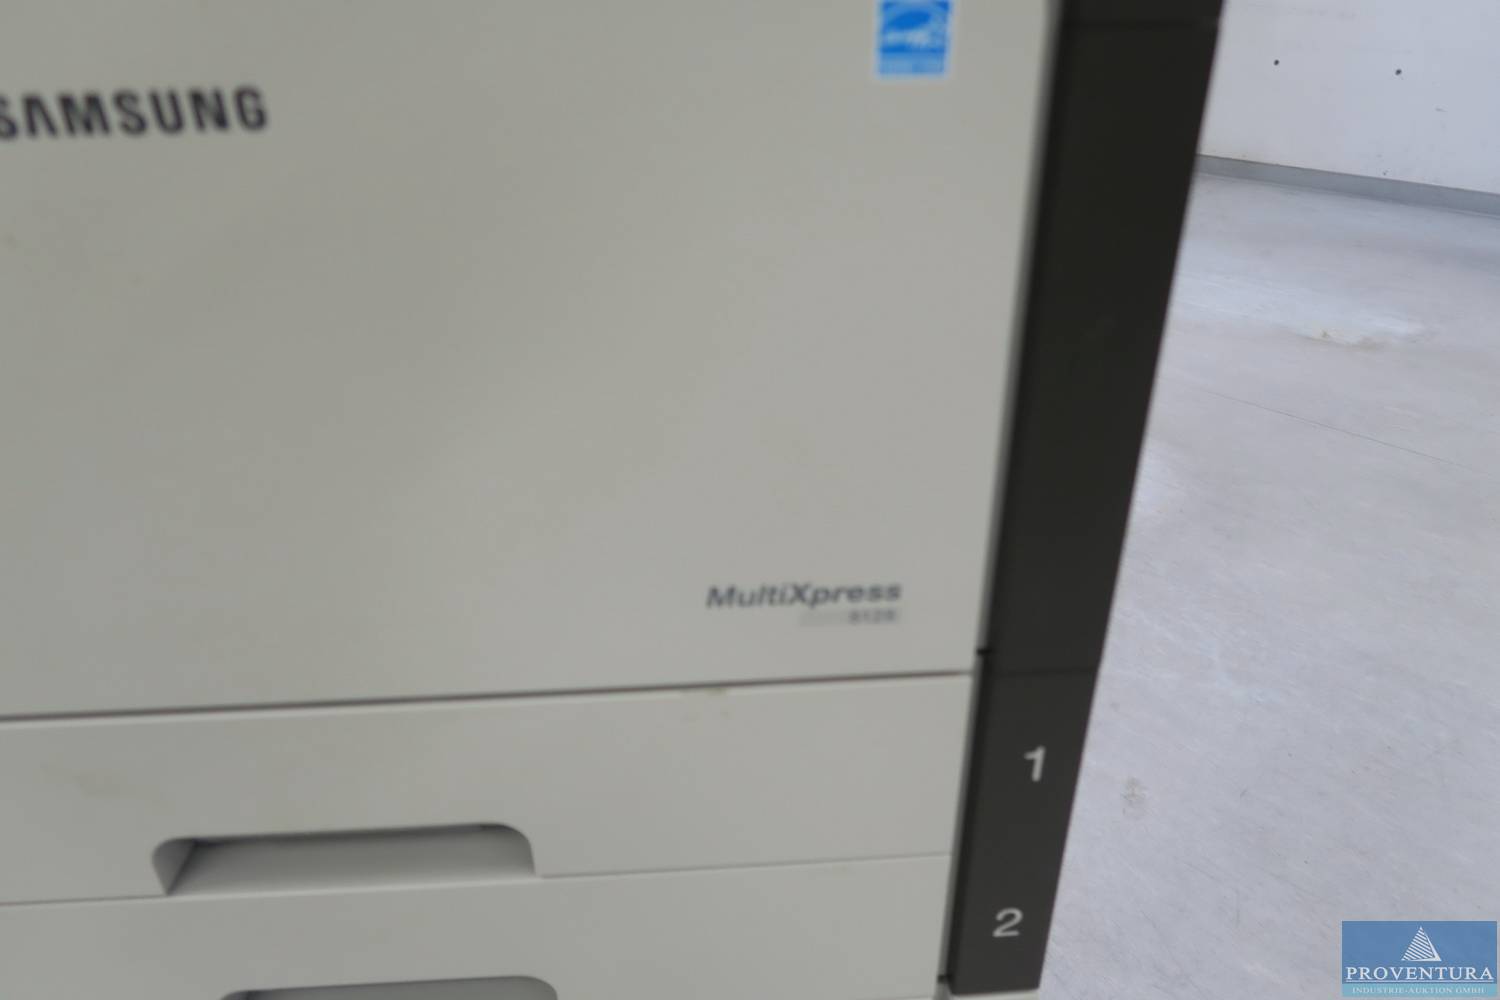 Multifunktionsgerät Samsung Multixpress 8128 Proventura Online Auktion 8563